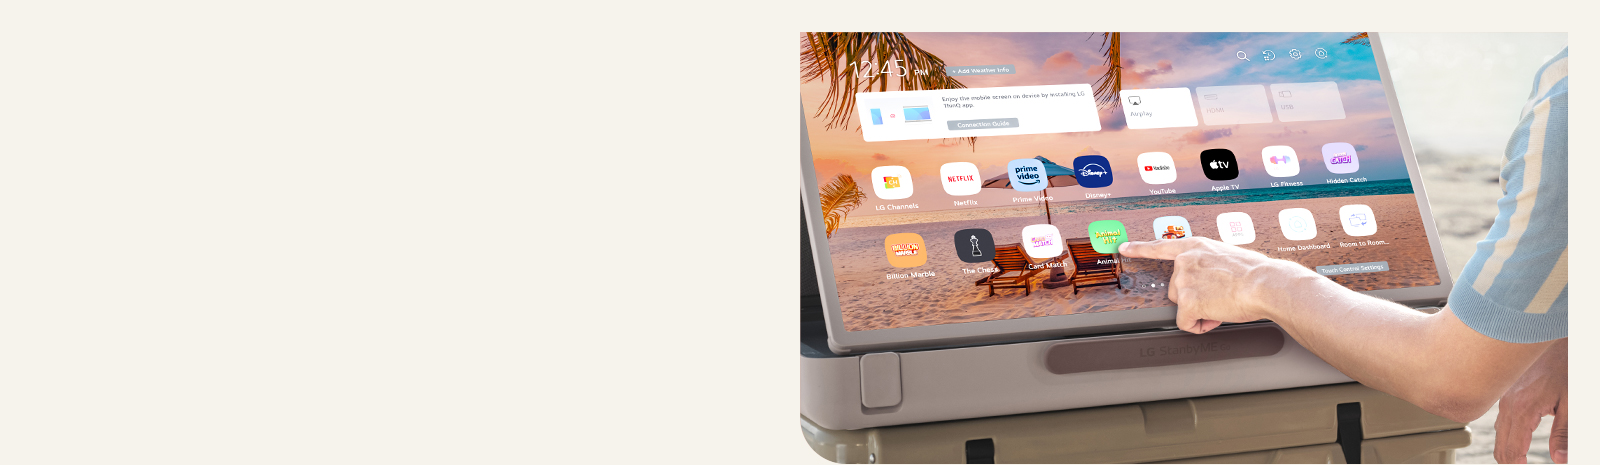 Zoom du LG StanbyME Go. Le produit est placé sur une table et l’écran pivoté à l’horizontale. Une main touche une icône.